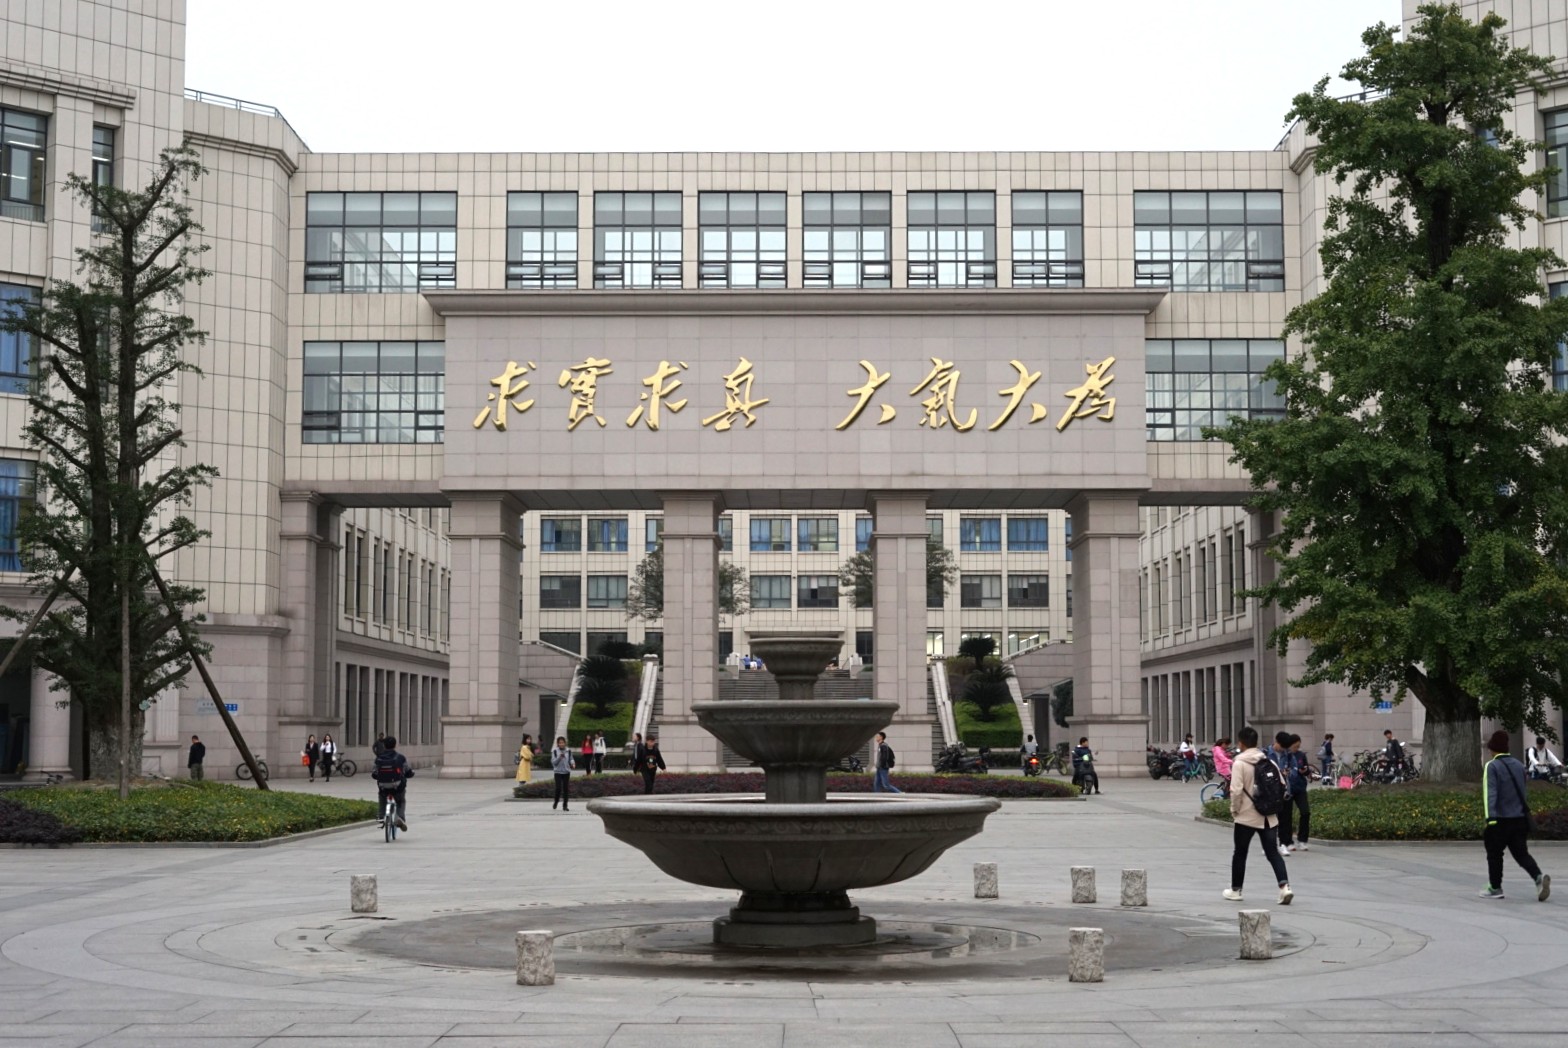 Vstupní prostor hlavní budovy kampusu v okresu Gingshuihe Univerzity elektronických věd a technologií v Číně. Univerzita, která má 3 kampusy, se rozkládá na ploše více asi 17 kilometrů čtverečných. Kredit: LimSoo-jung - ??????CC BY-SA